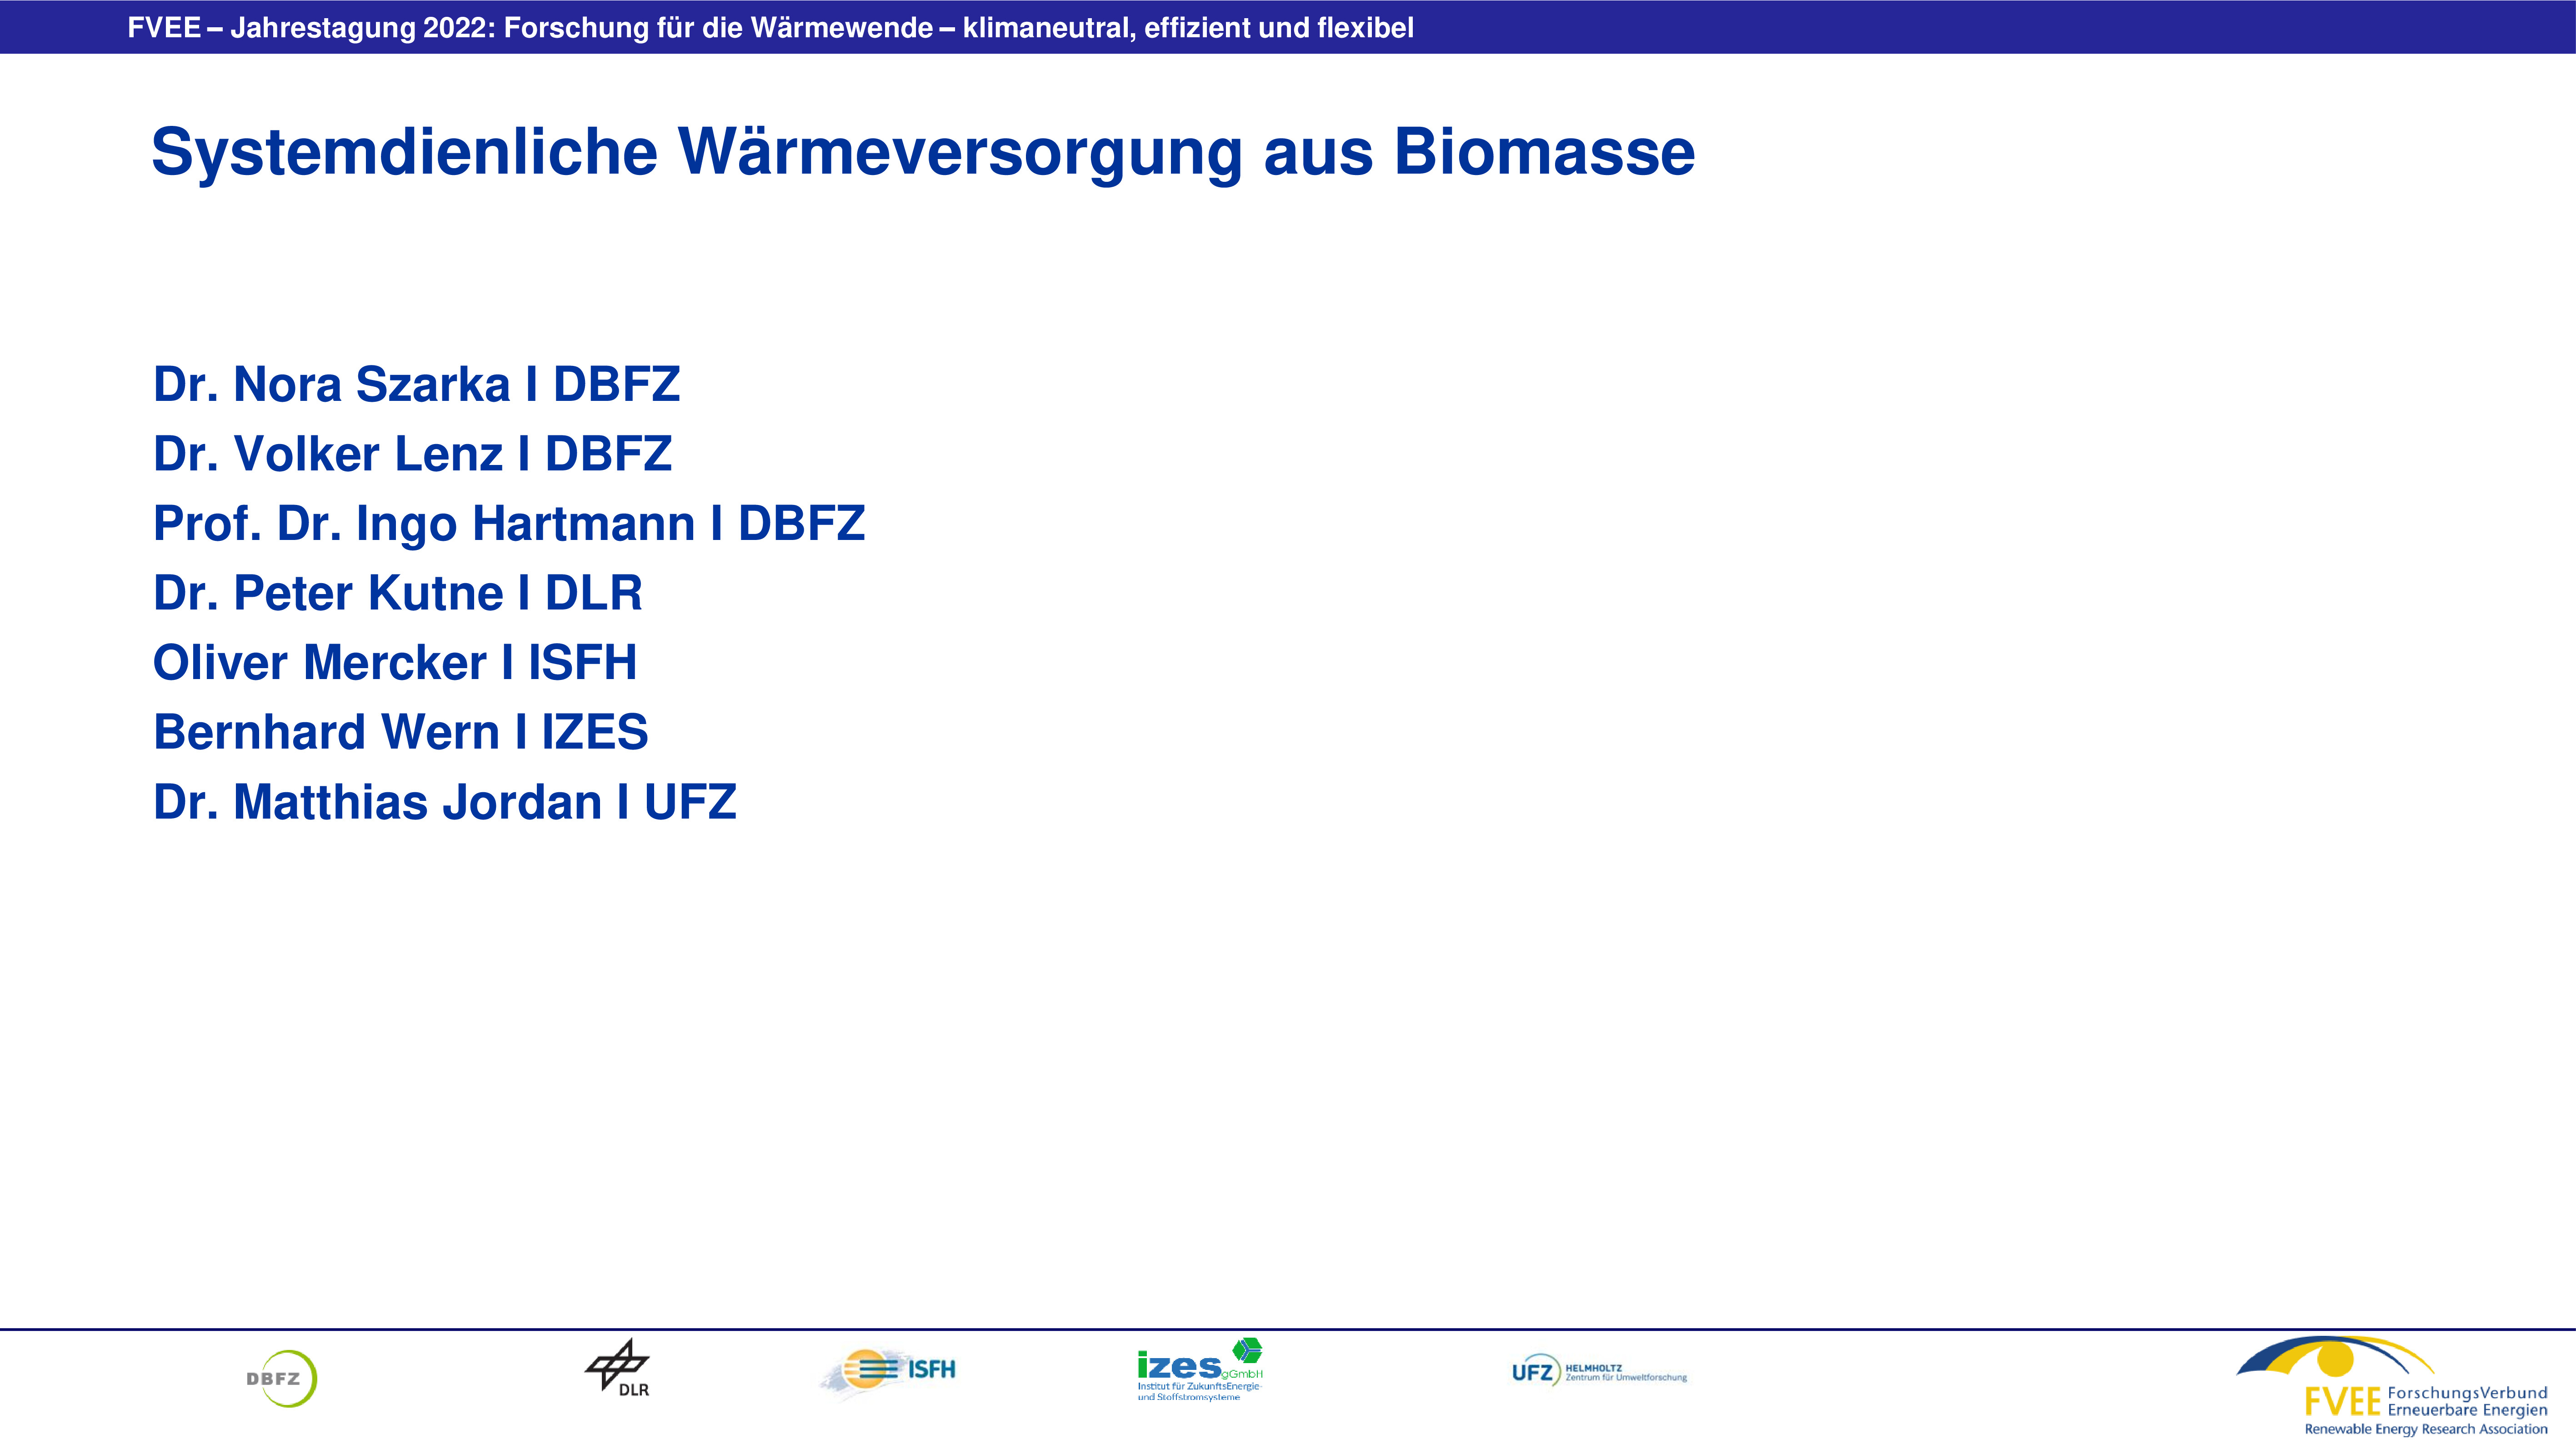 Systemdienliche Wärmeversorgung aus Biomasse (Szarka / Lenz - DBFZ)